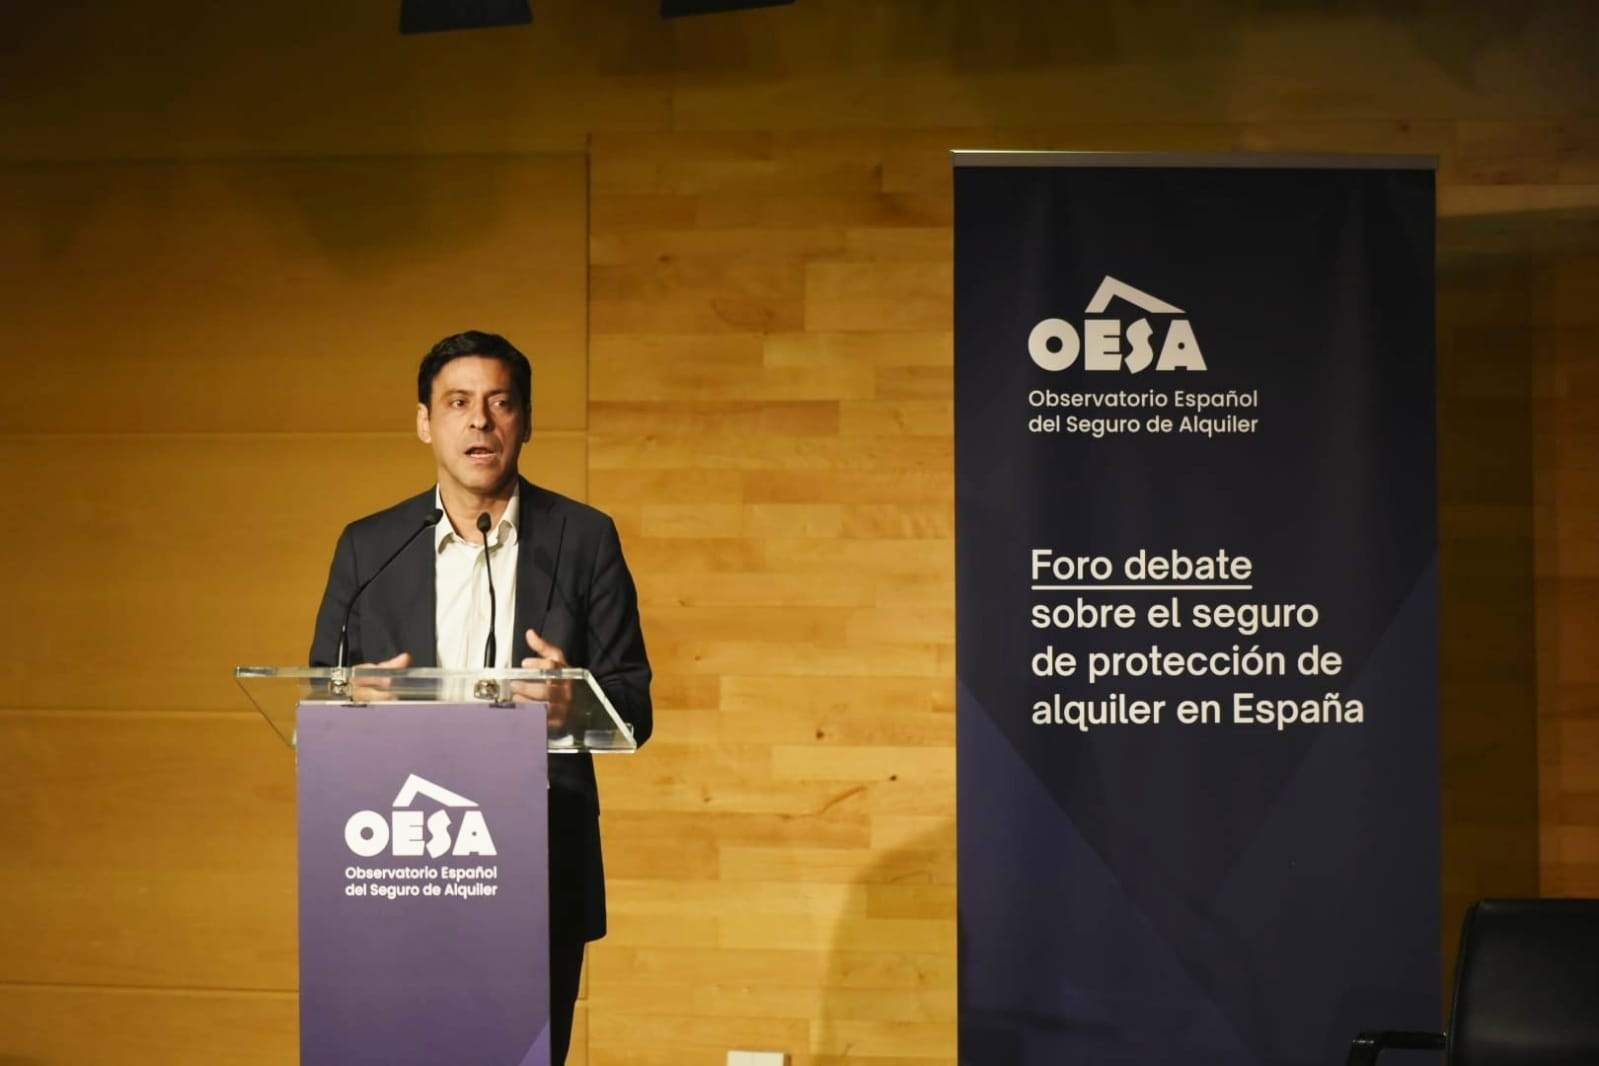 Vivienda cifra en 1 millón los inmuebles necesarios para solucionar el déficit de vivienda en España